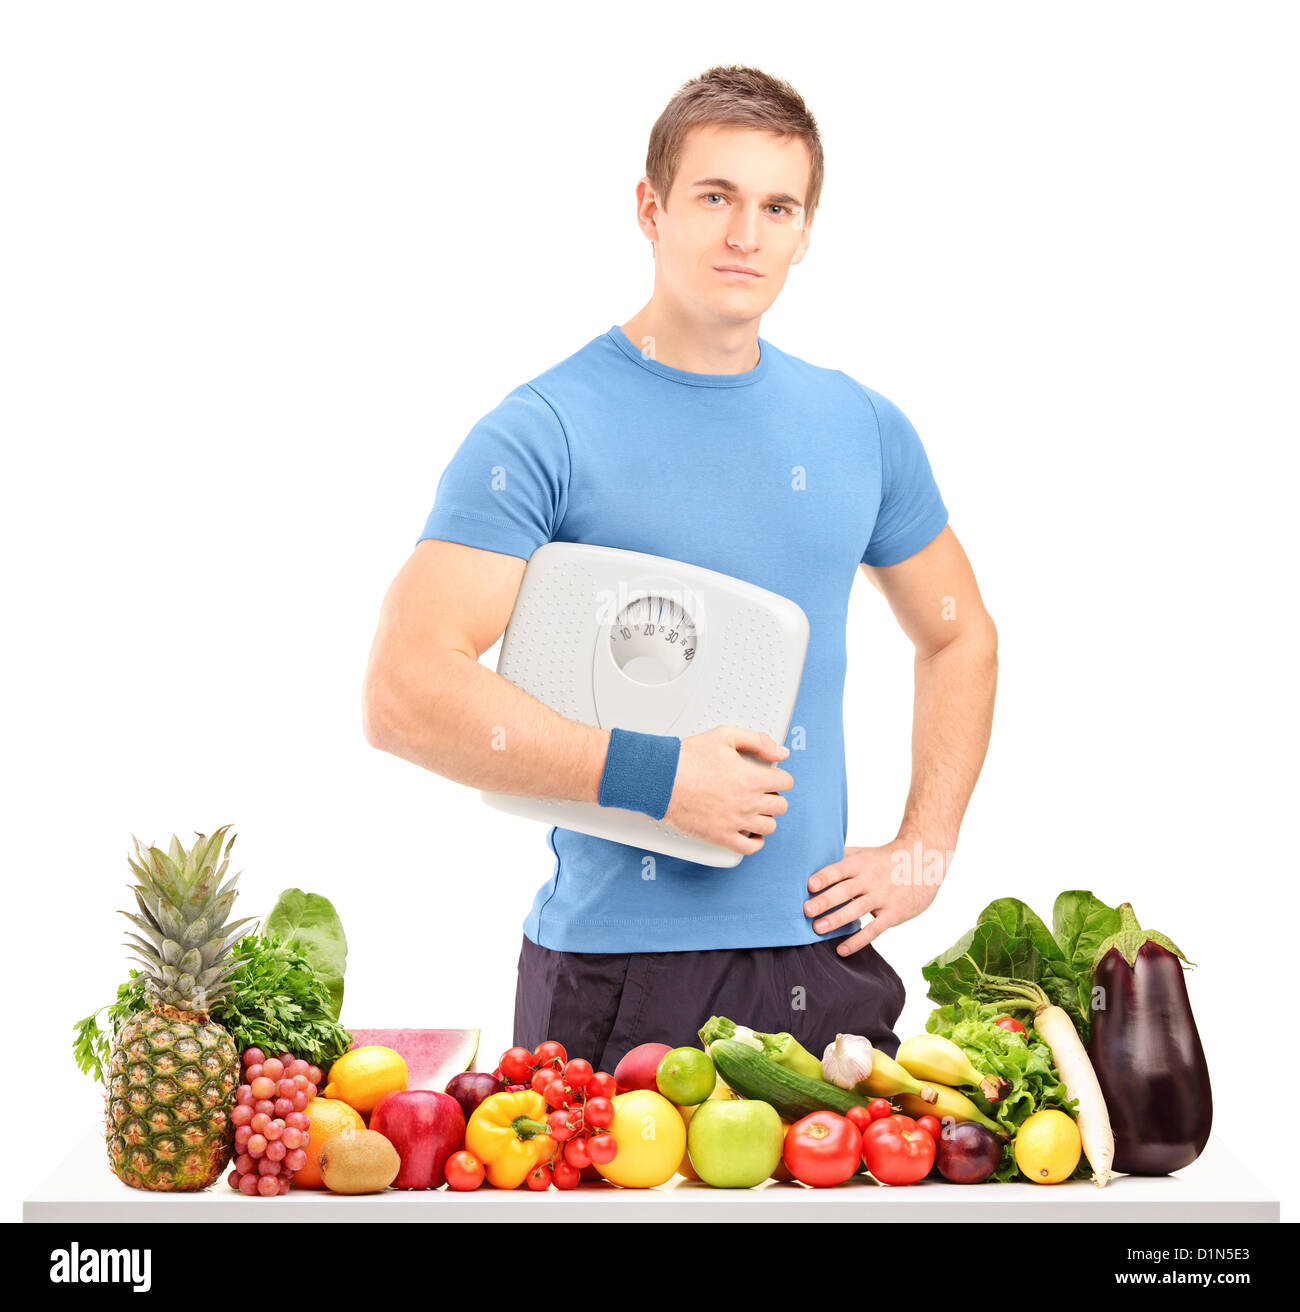 Ein männlicher Athlet hält eine Waage hinter einem Tisch voller Obst und Gemüse isoliert auf weißem Hintergrund Stockfoto